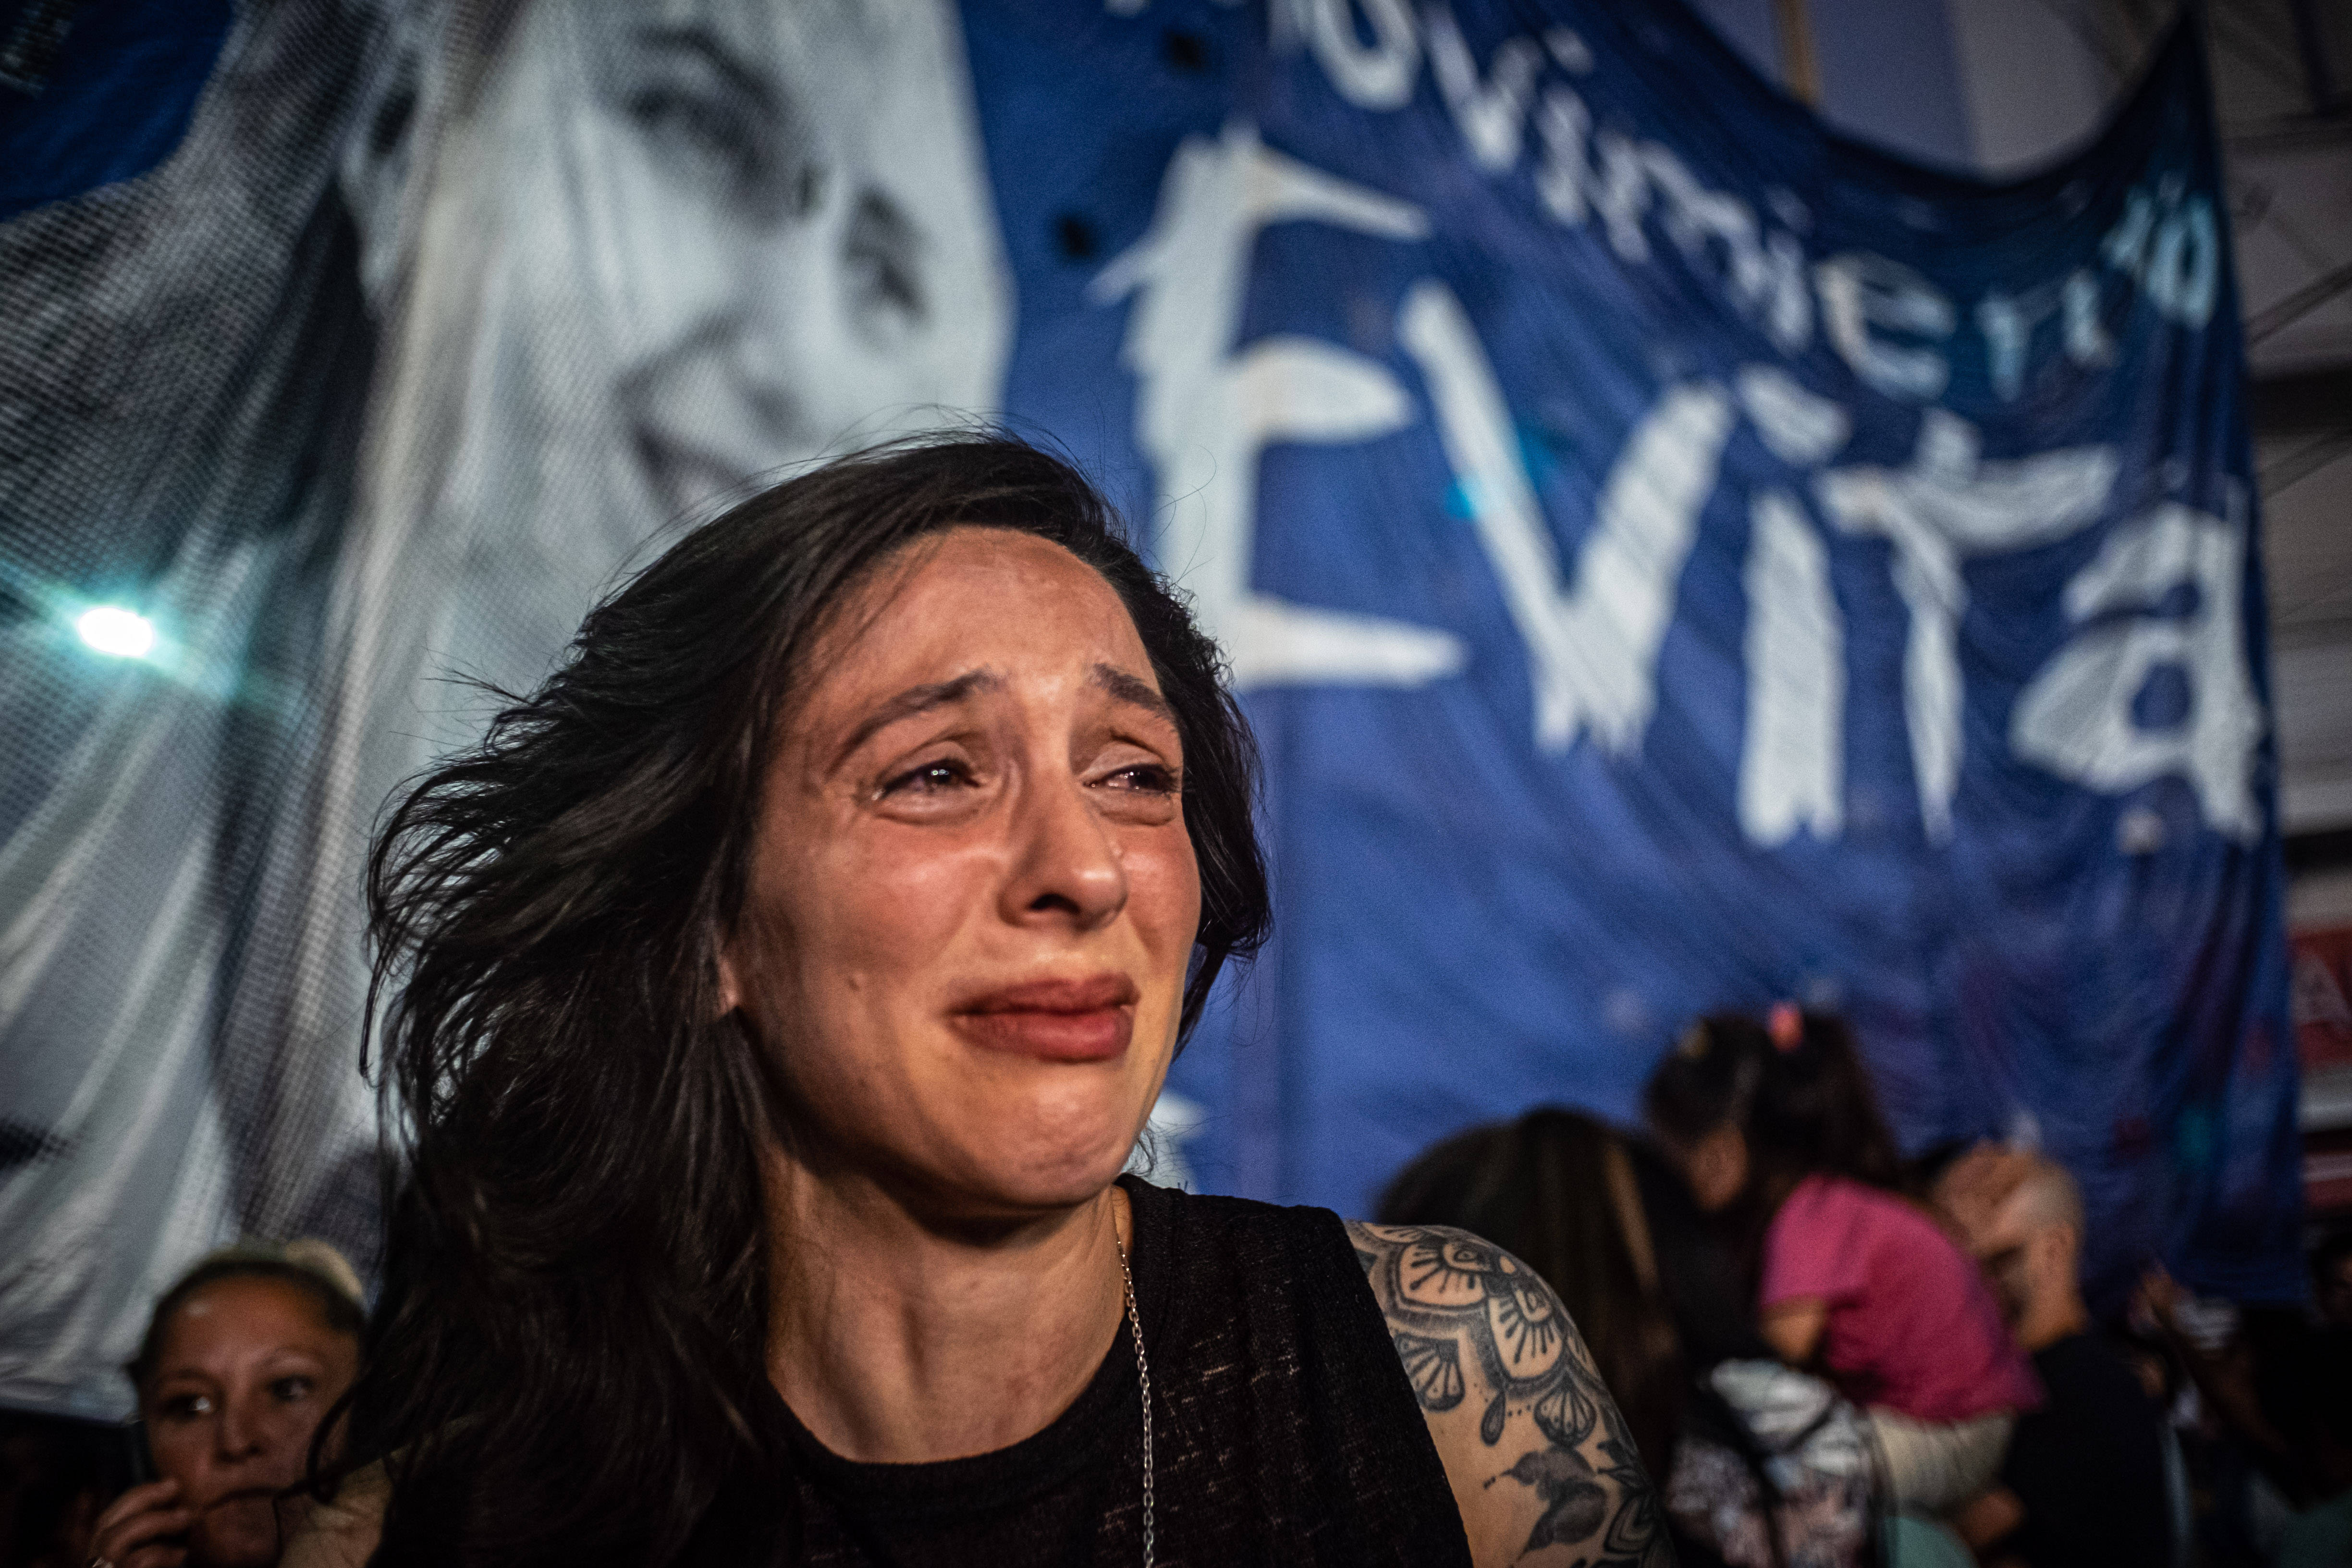 Cry for me Argentina: Eine Frau weint in der Hauptstadt Buenos Aires, nachdem das Ergebnis der Präsidentschaftswahl bekanntgegeben wird.